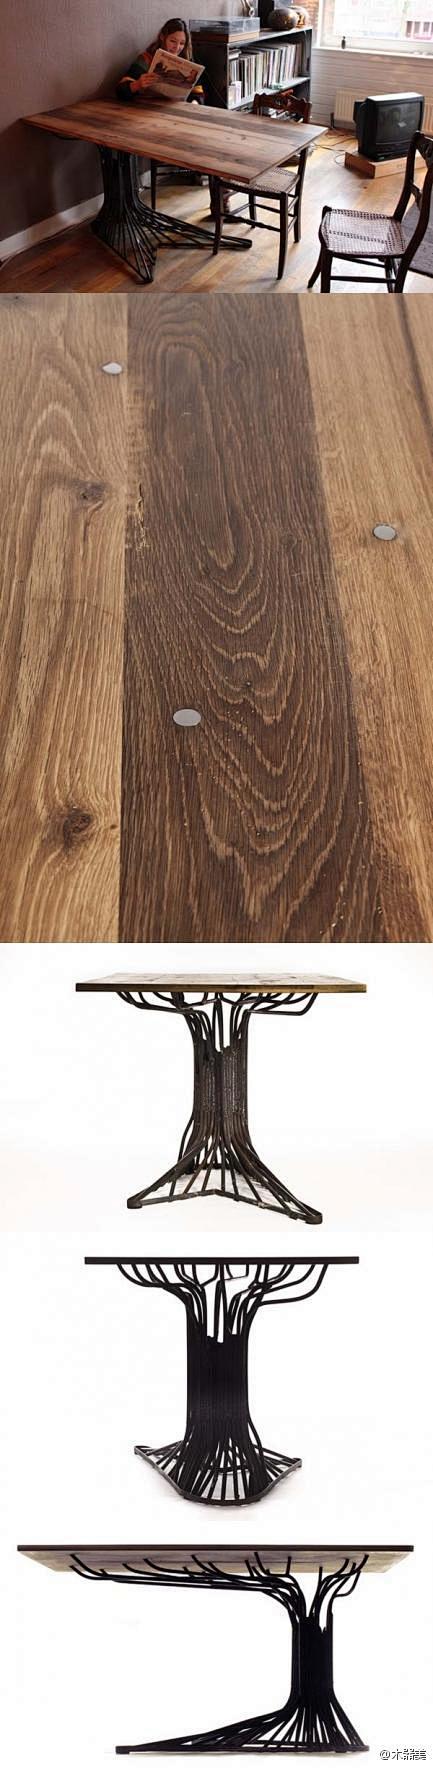 以橡树为概念设计的系列家具产品。设计师用...